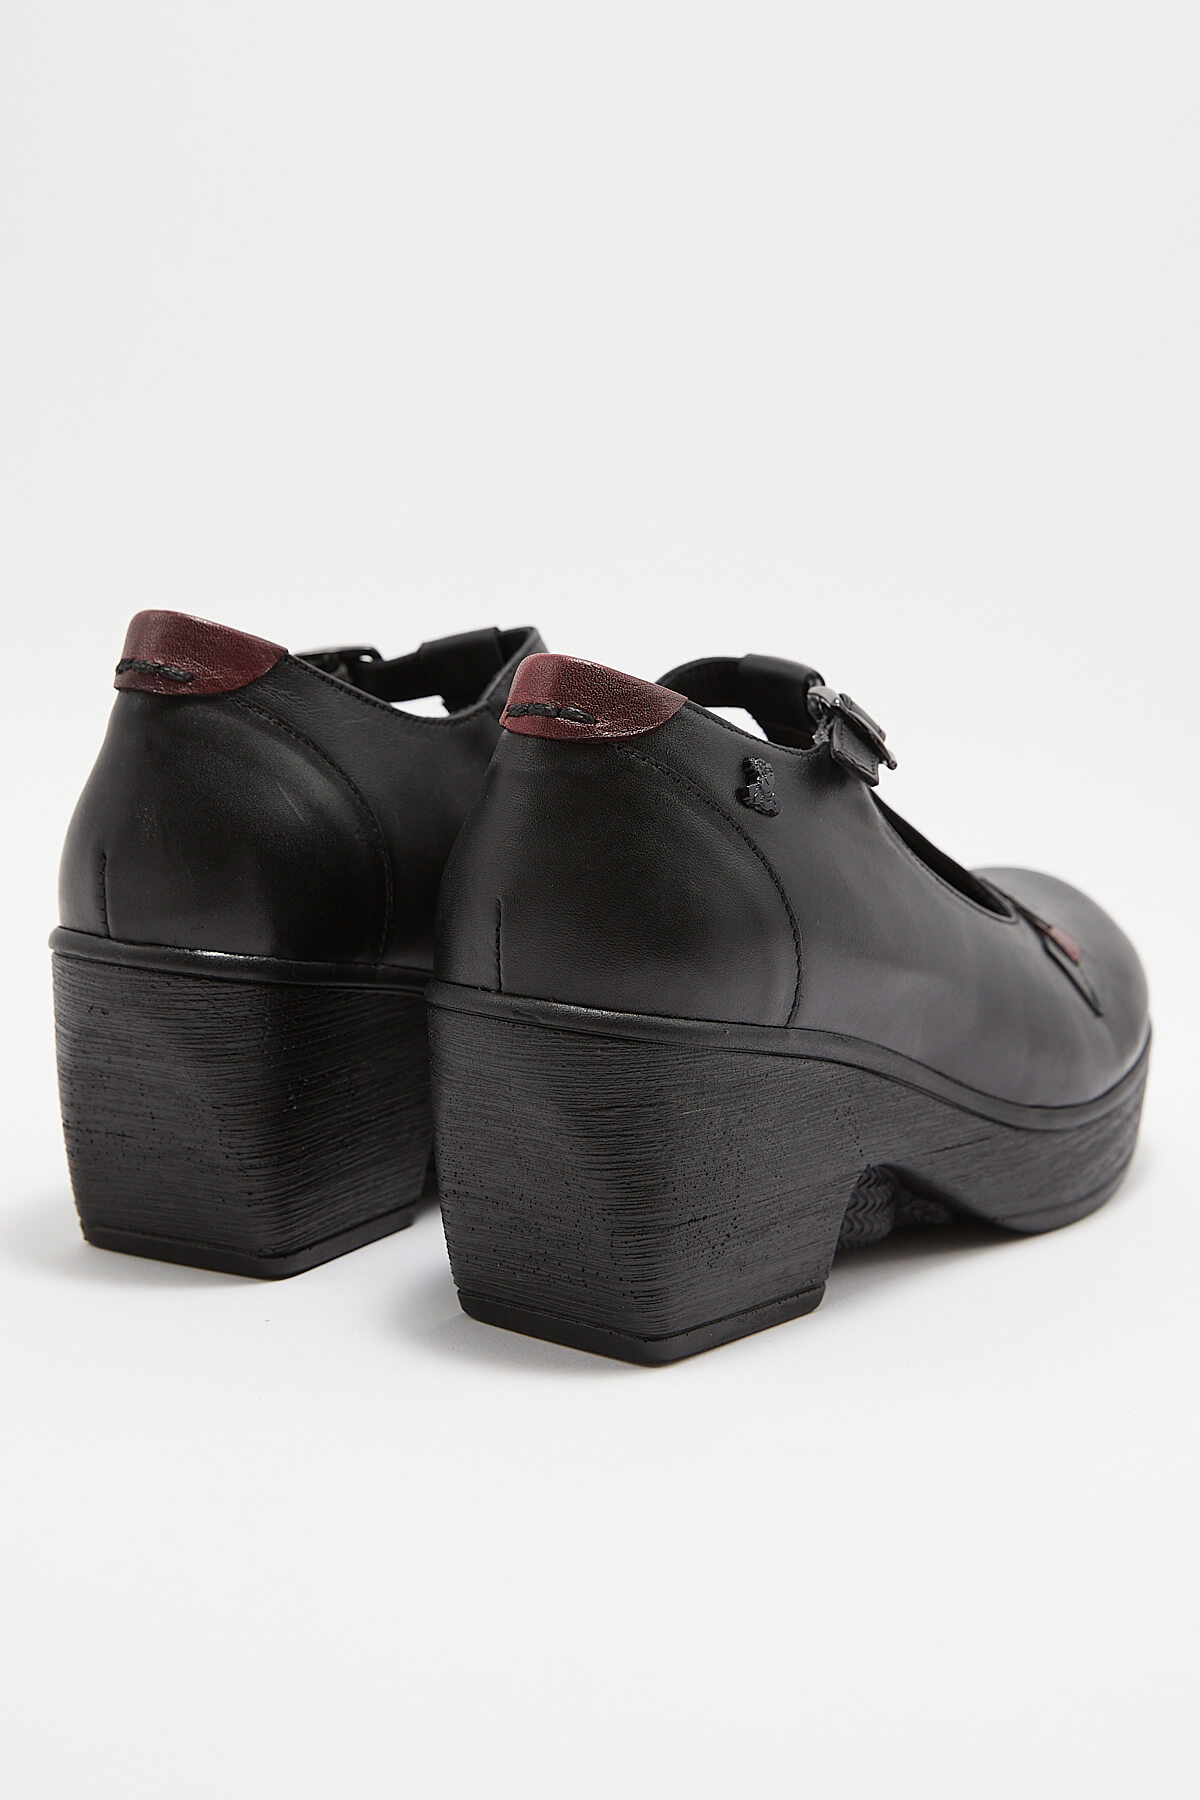 Kadın Apartman Topuk Deri Ayakkabı Siyah 1912511Y